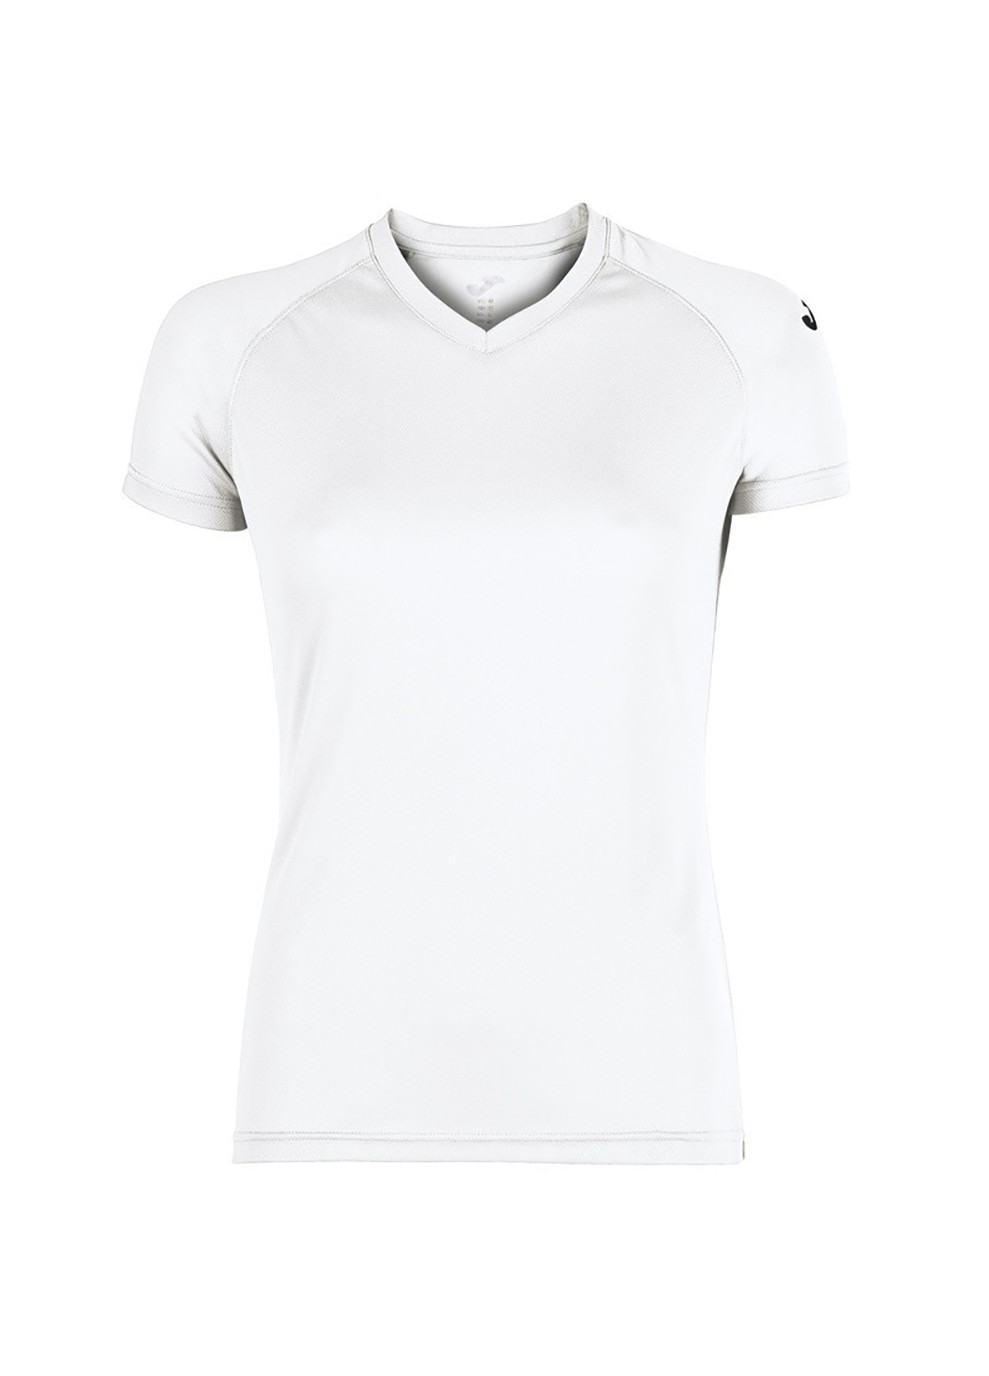 Белая демисезон футболка event t-shirt white s/s woman белый Joma